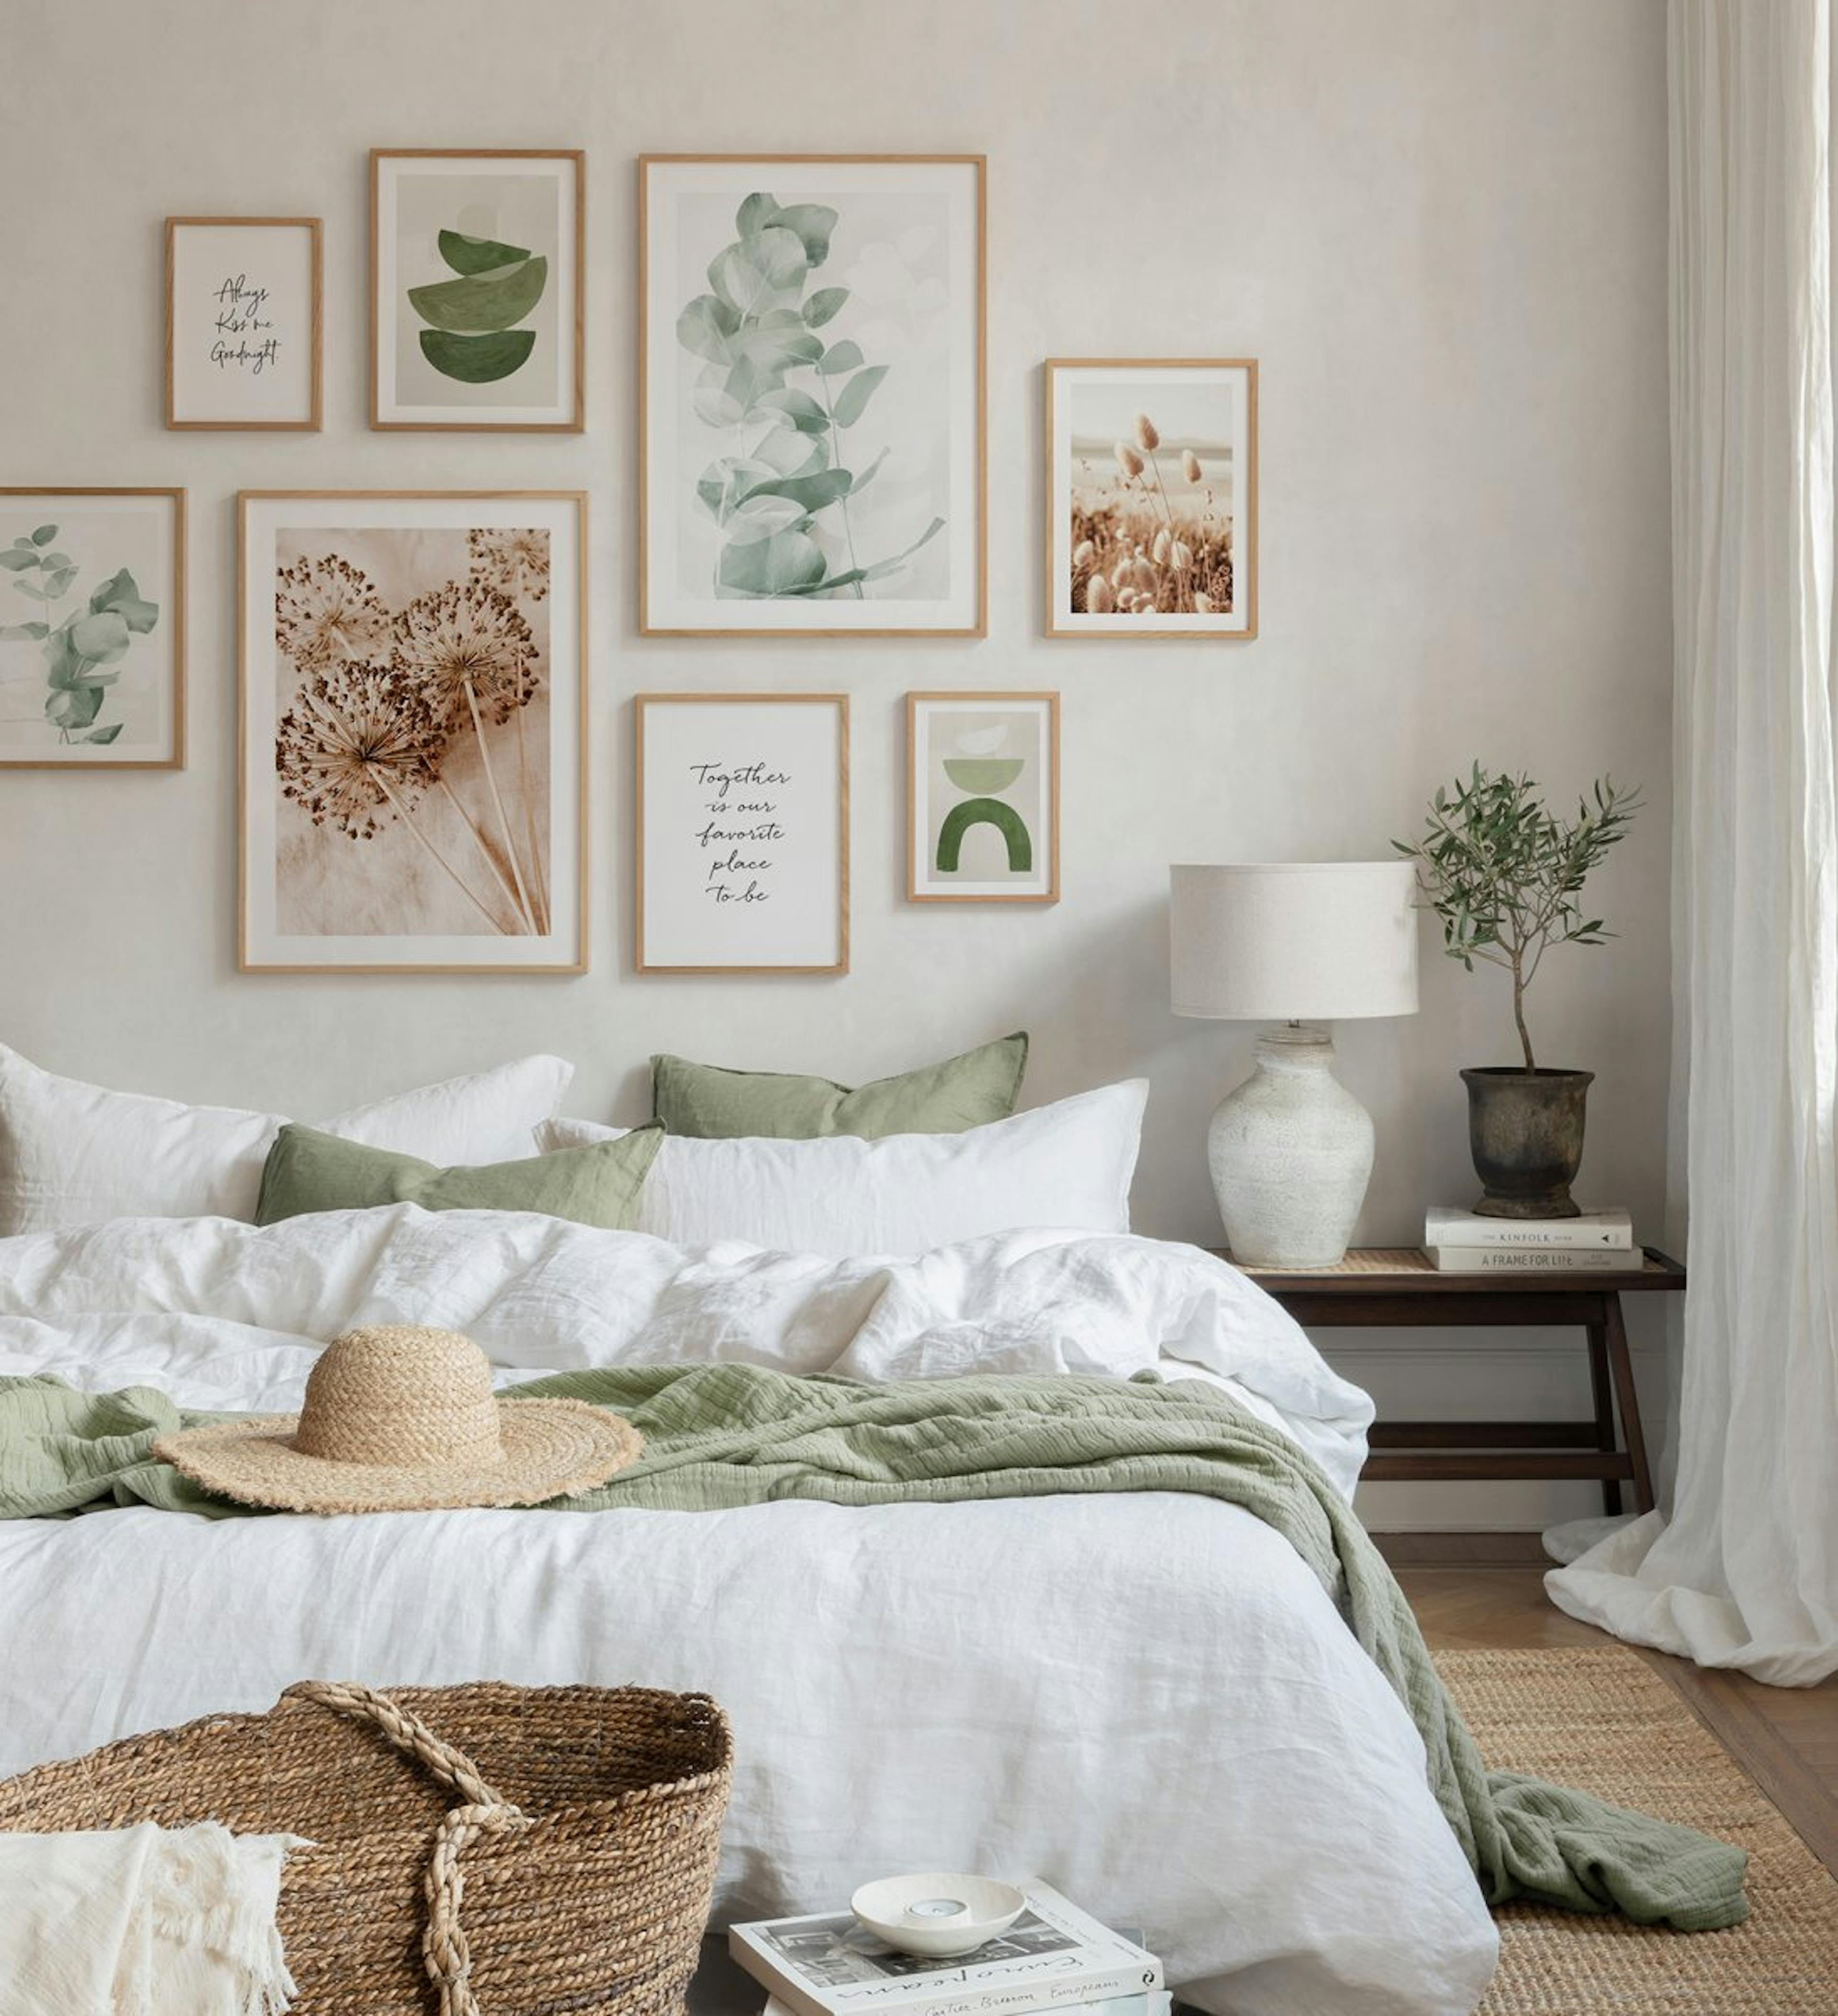 جدار معرض نباتي من الطبيعة الخضراء يطبع بألوان البيج والأخضر مع إطارات البلوط لغرفة النوم